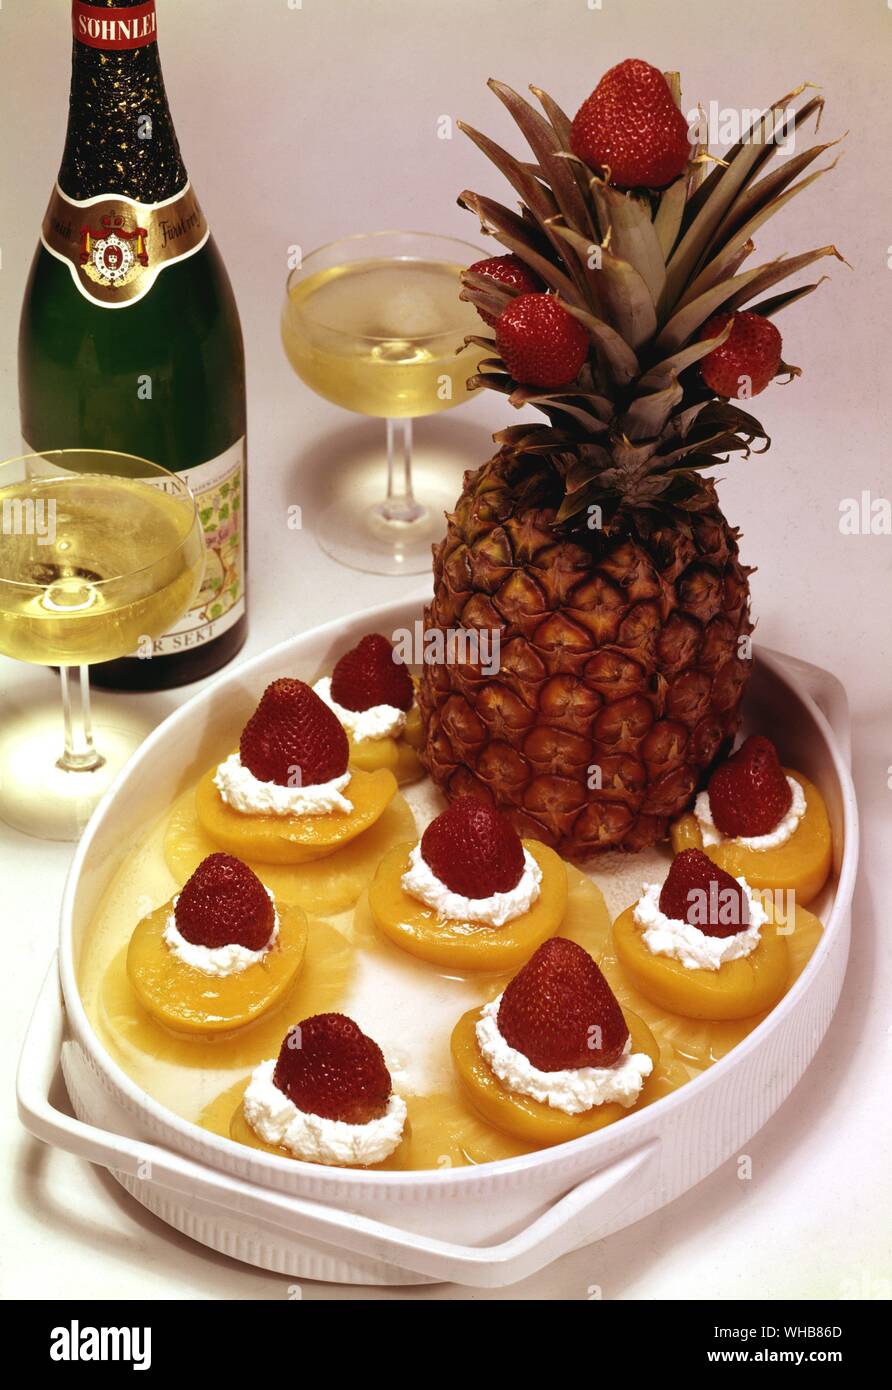 Dessert de pêches ananas et fraises. Banque D'Images